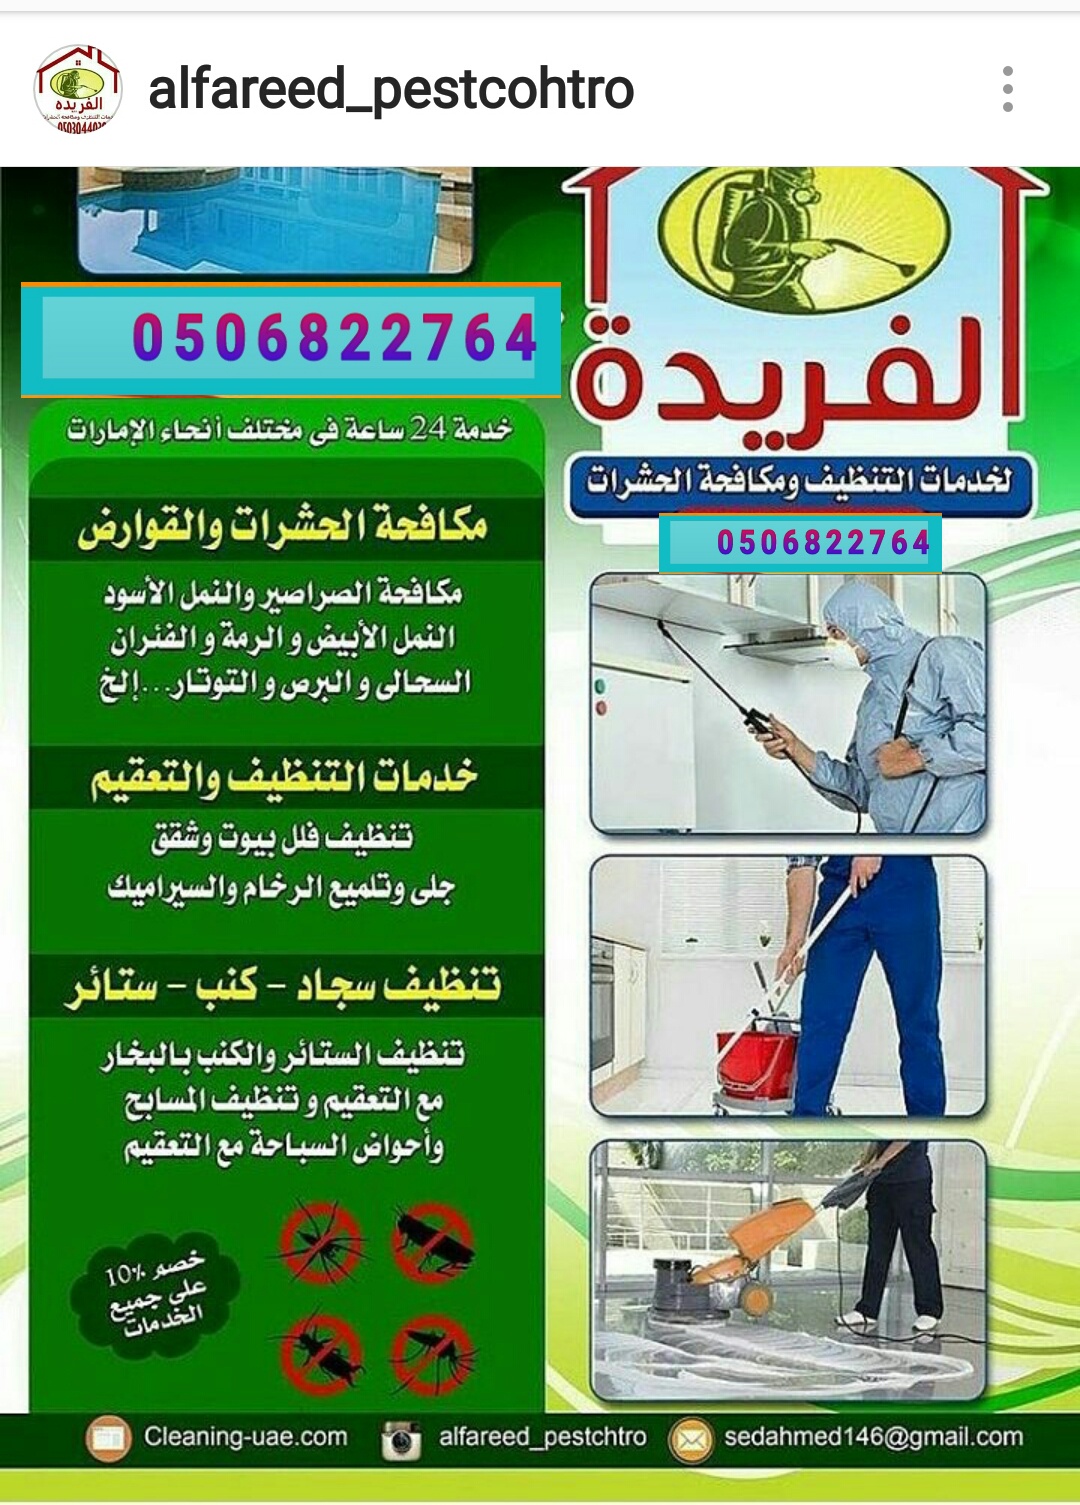 مكافحه حشرات في ابو ظبي من شركة الفريدة 00971506822764 P_783msw6w1